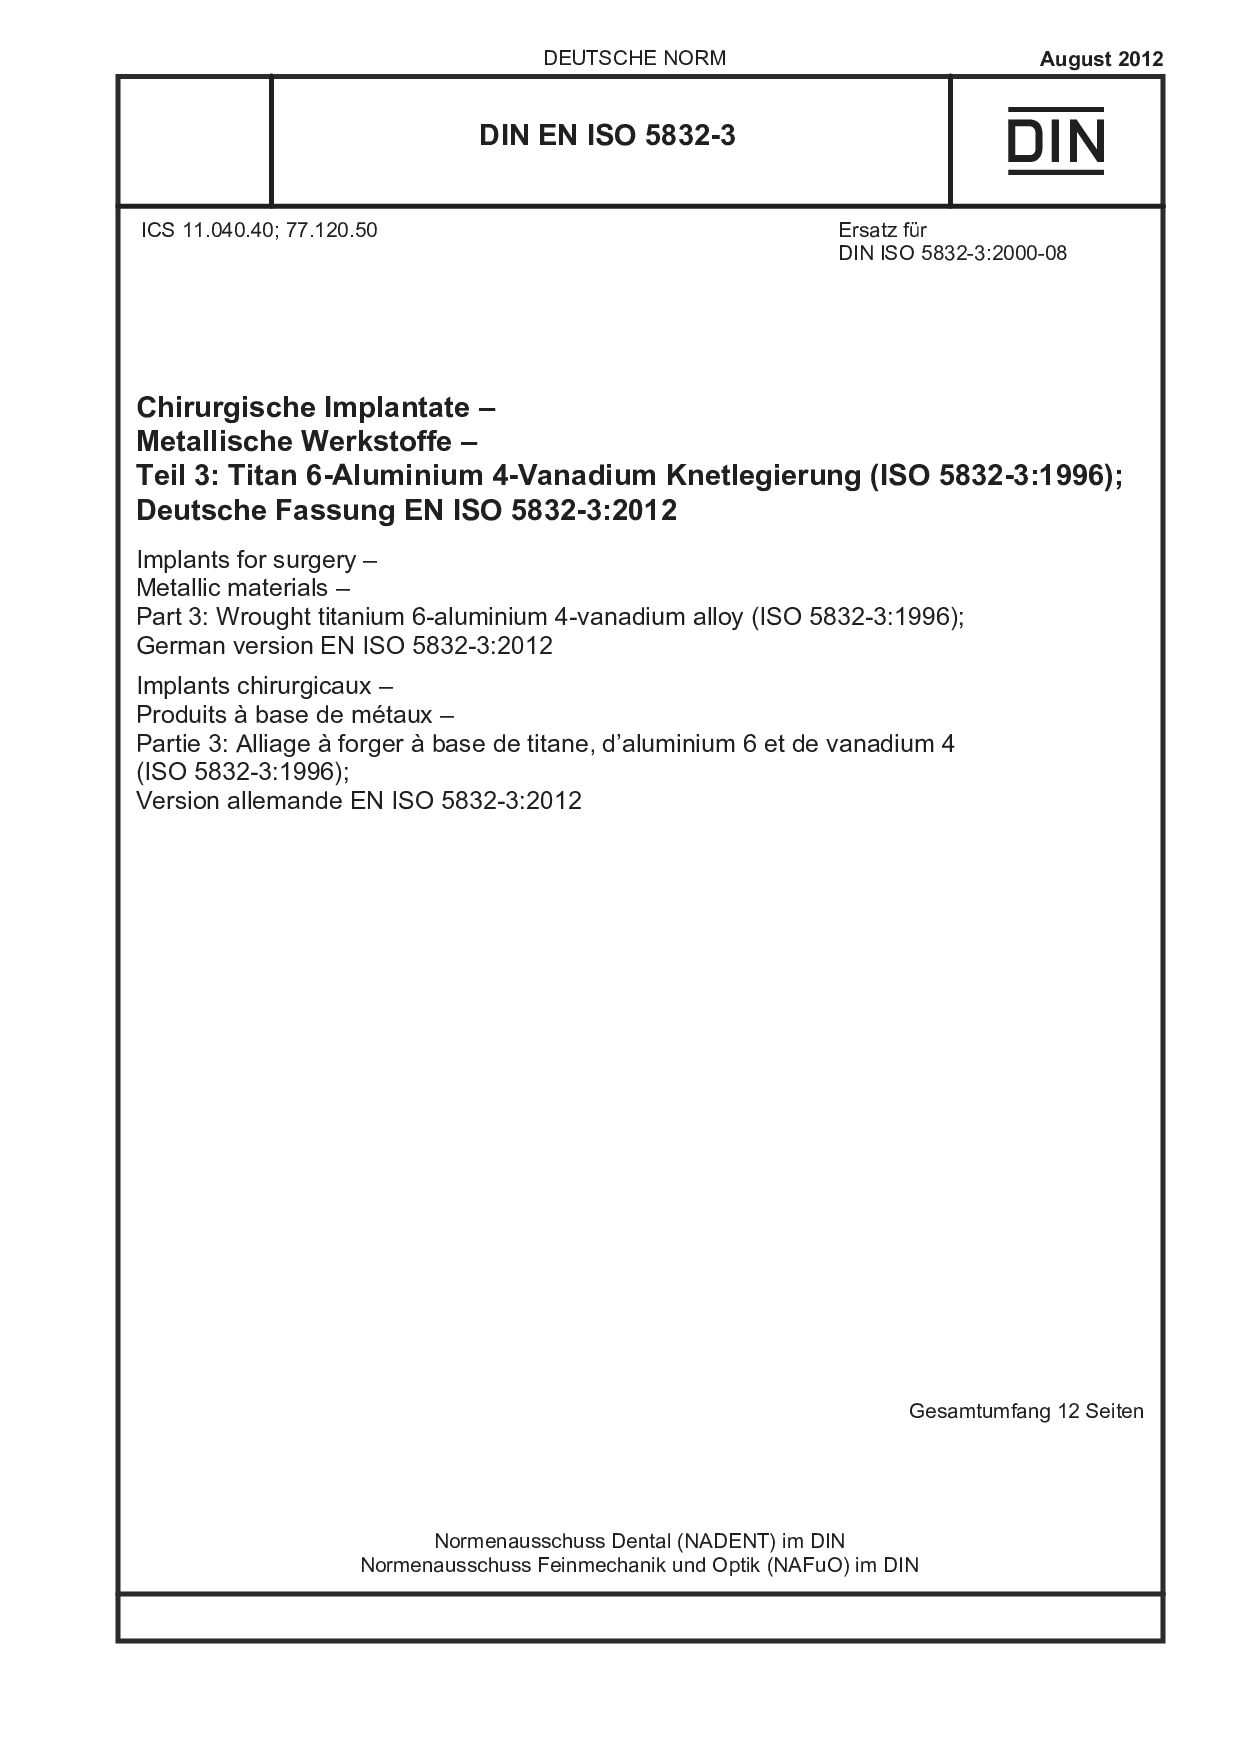 DIN EN ISO 5832-3:2012